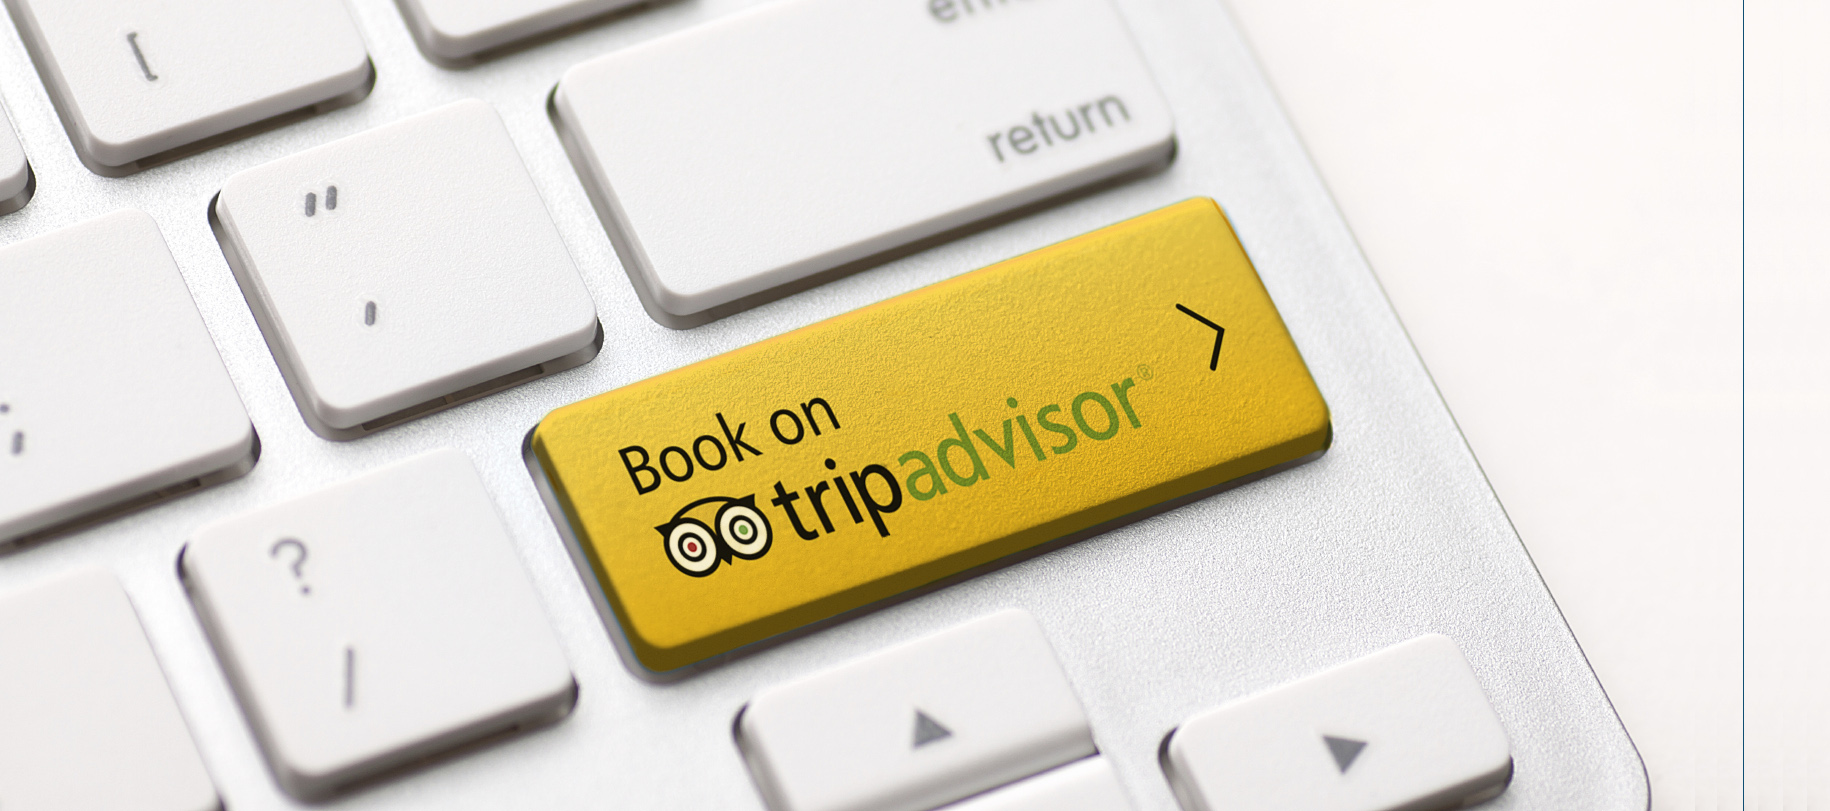 Tripadvisor.com startet Instant Booking auch in Deutschland - Direkt Hotels buchen auf Bewertungsportal - Hotelbewertungen noch besser managen